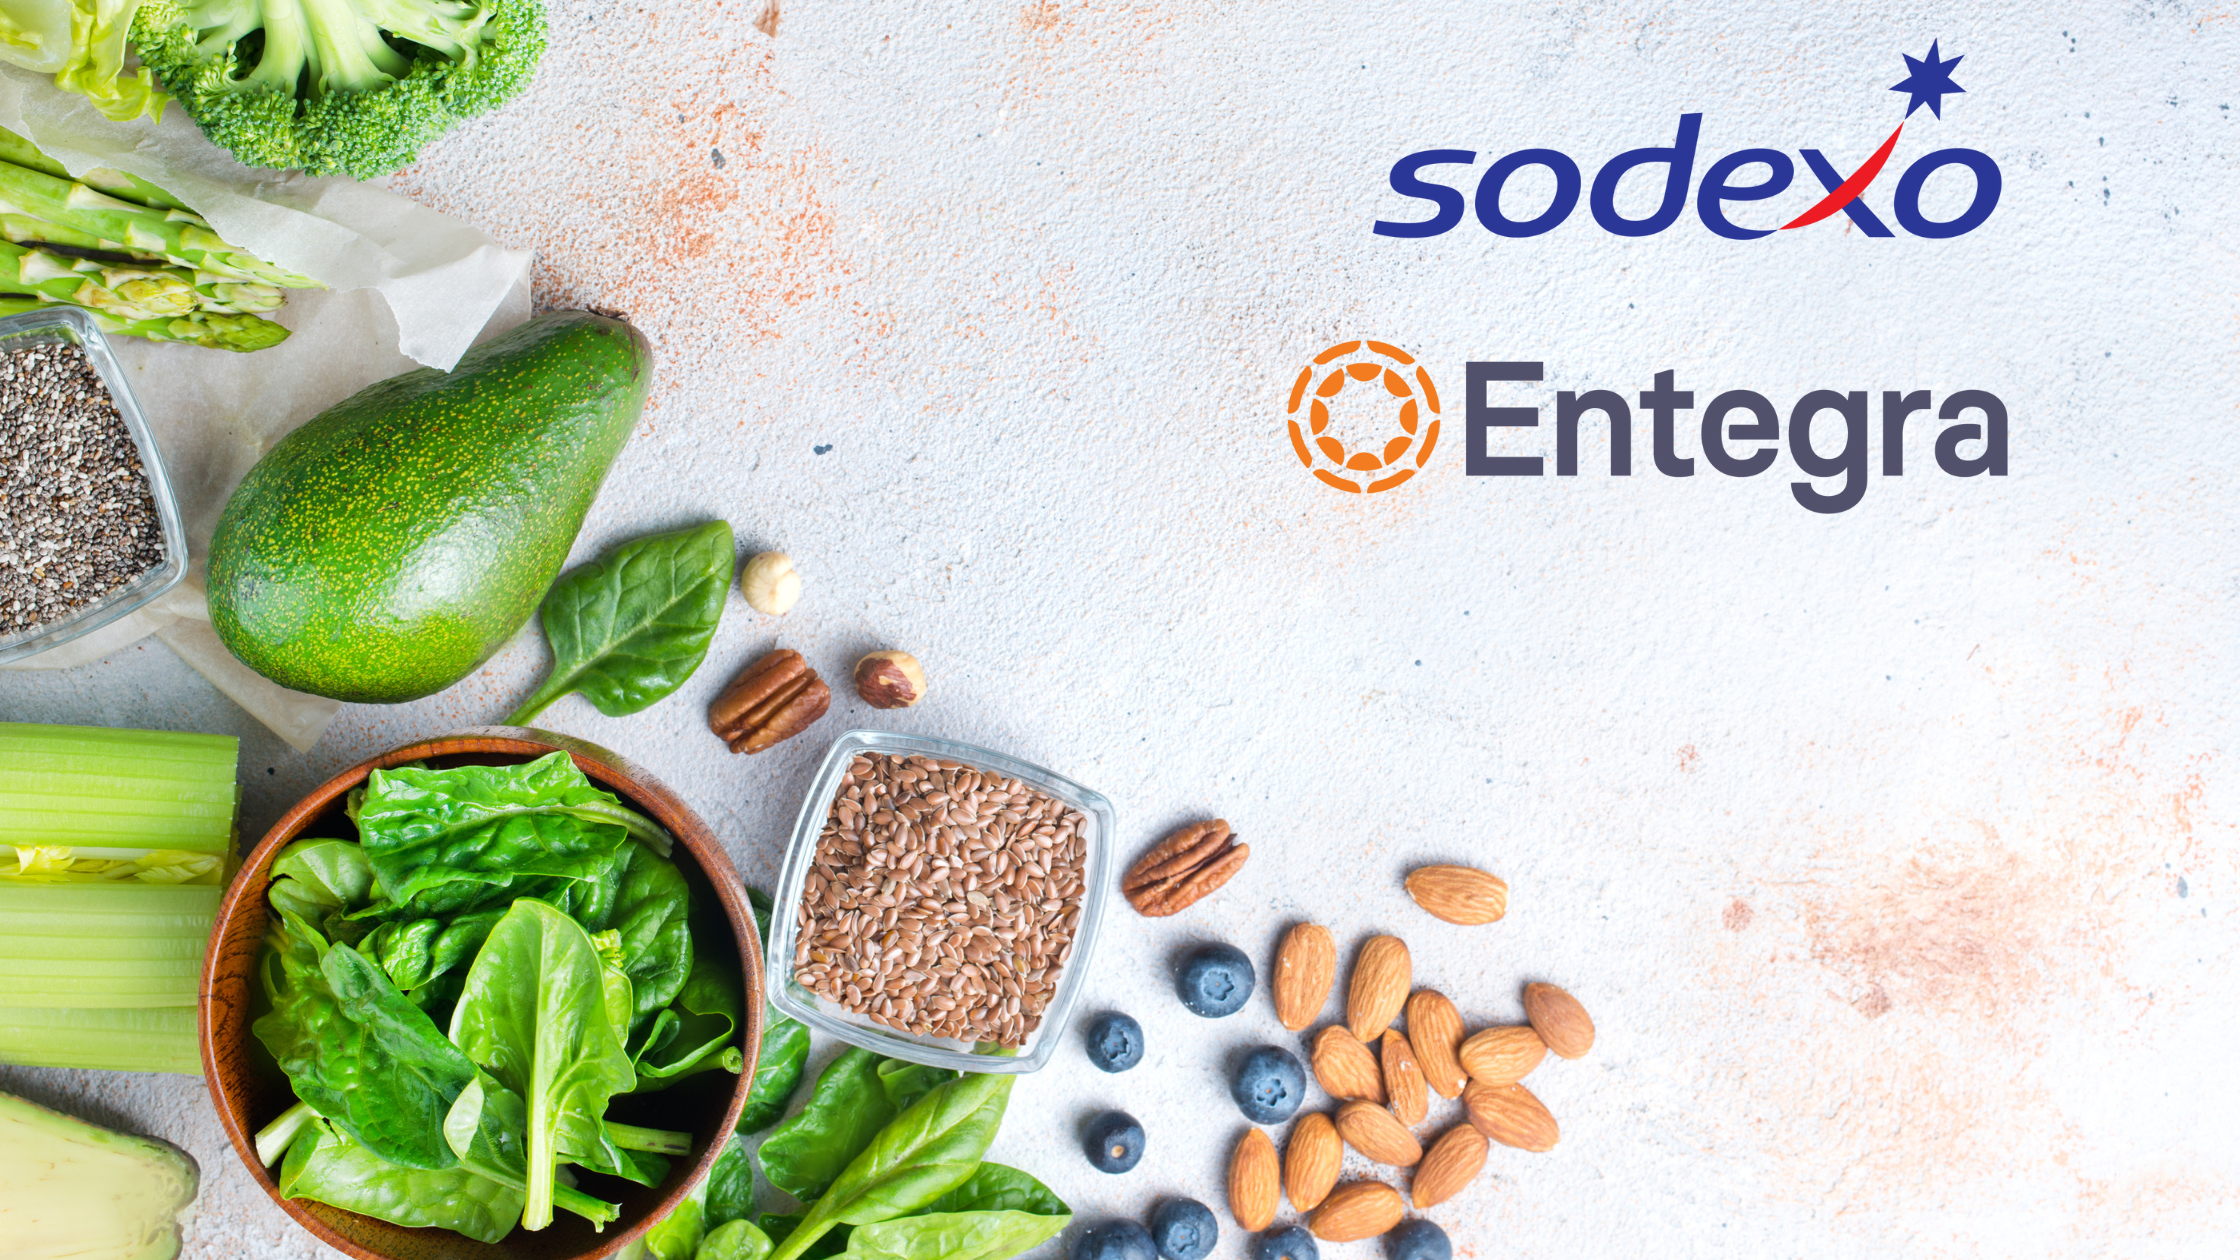 Comment les membres Sodexo peuvent-ils bénéficier de la centrale d'achat Entegra?